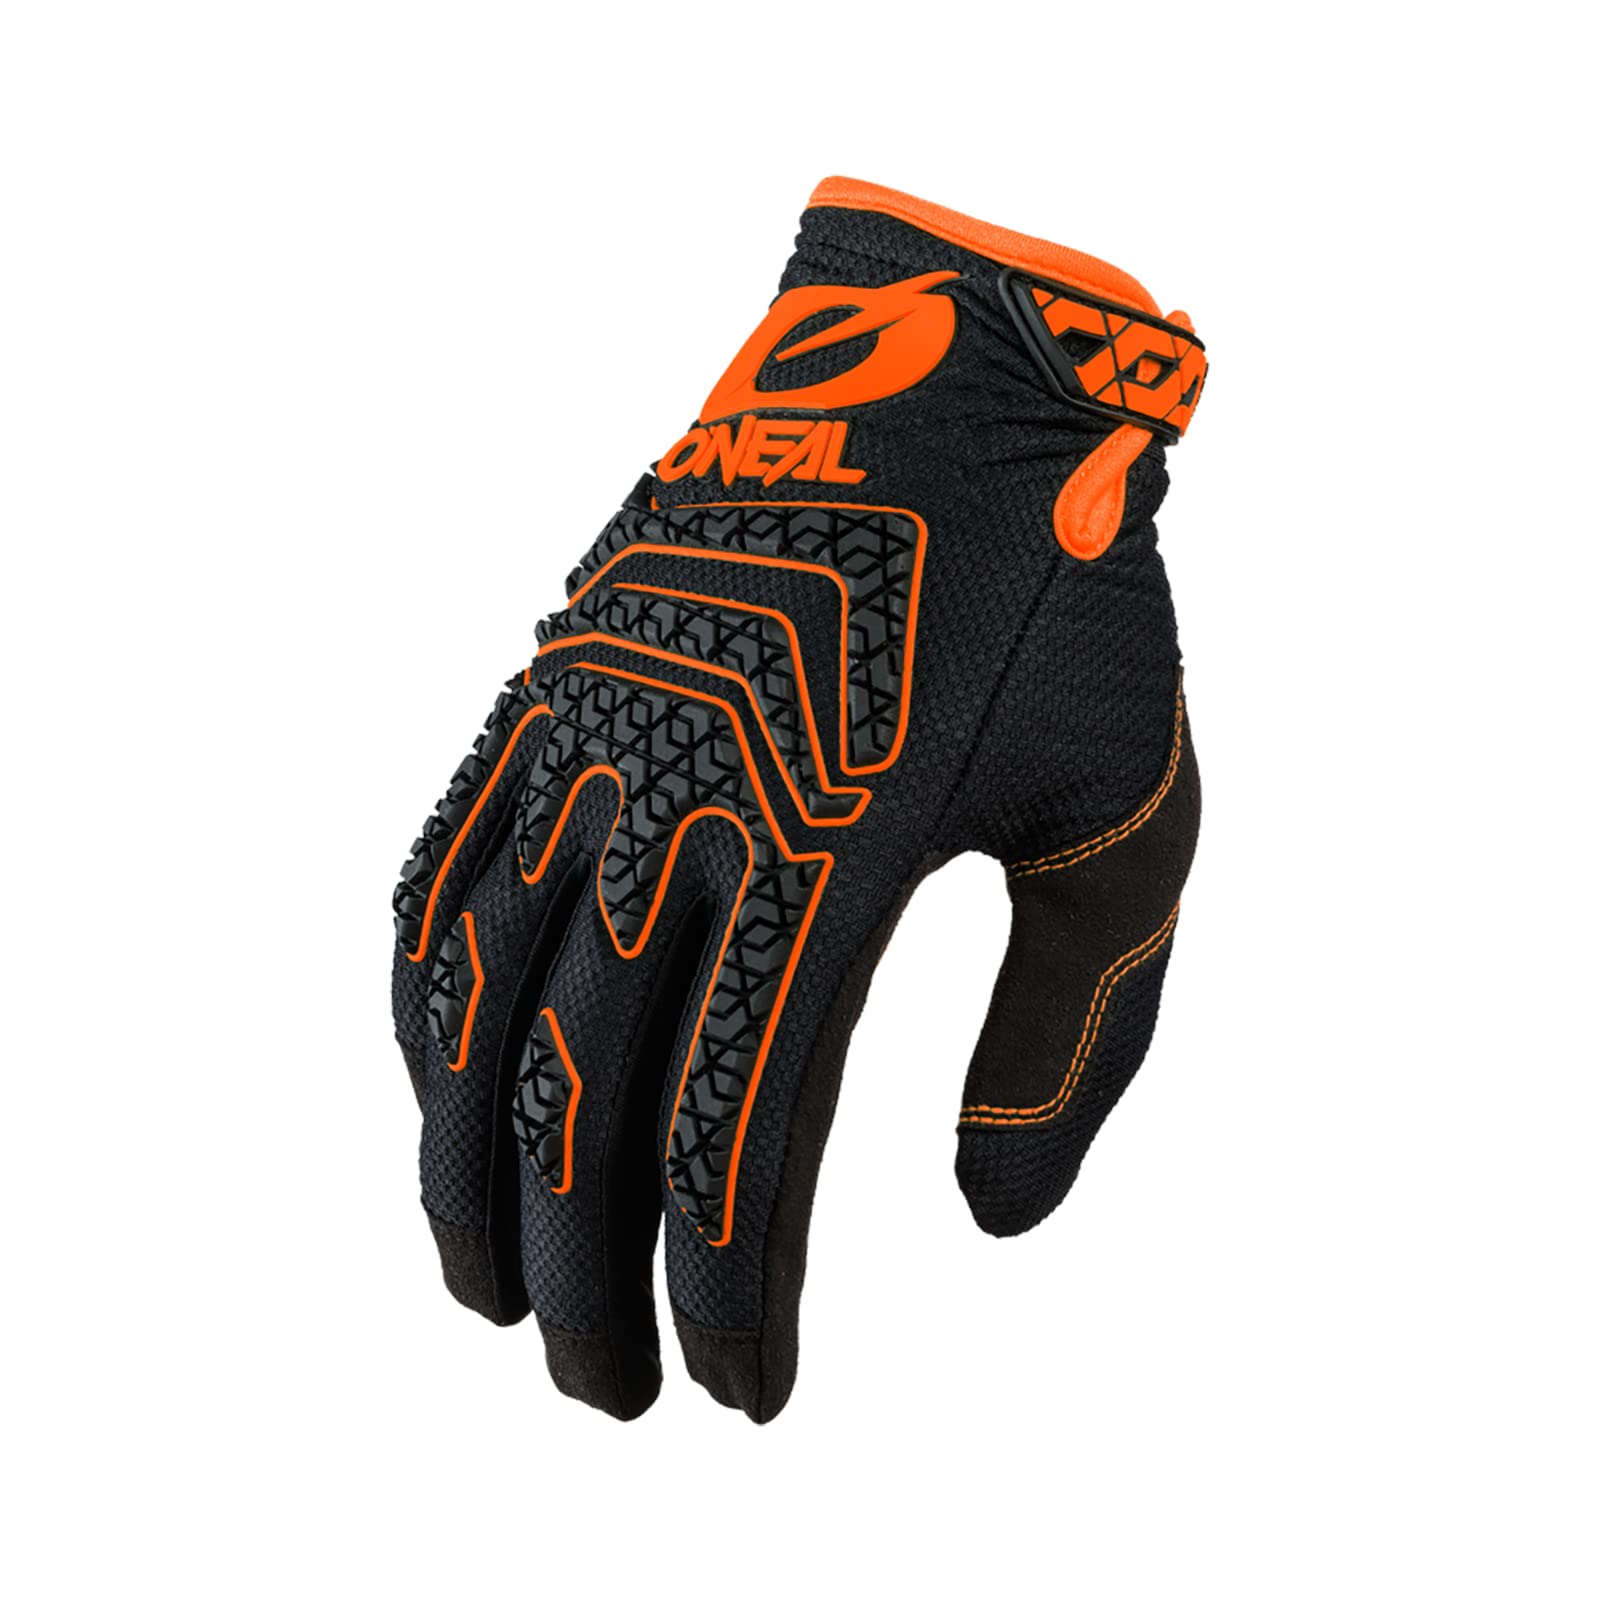 O'NEAL | Fahrrad- & Motocross-Handschuhe | MX MTB DH FR Downhill Freeride | Langlebige, Flexible Materialien, Silikonprint für Grip | Sniper Elite Glove | Erwachsene | Schwarz Orange | Größe M von O'NEAL